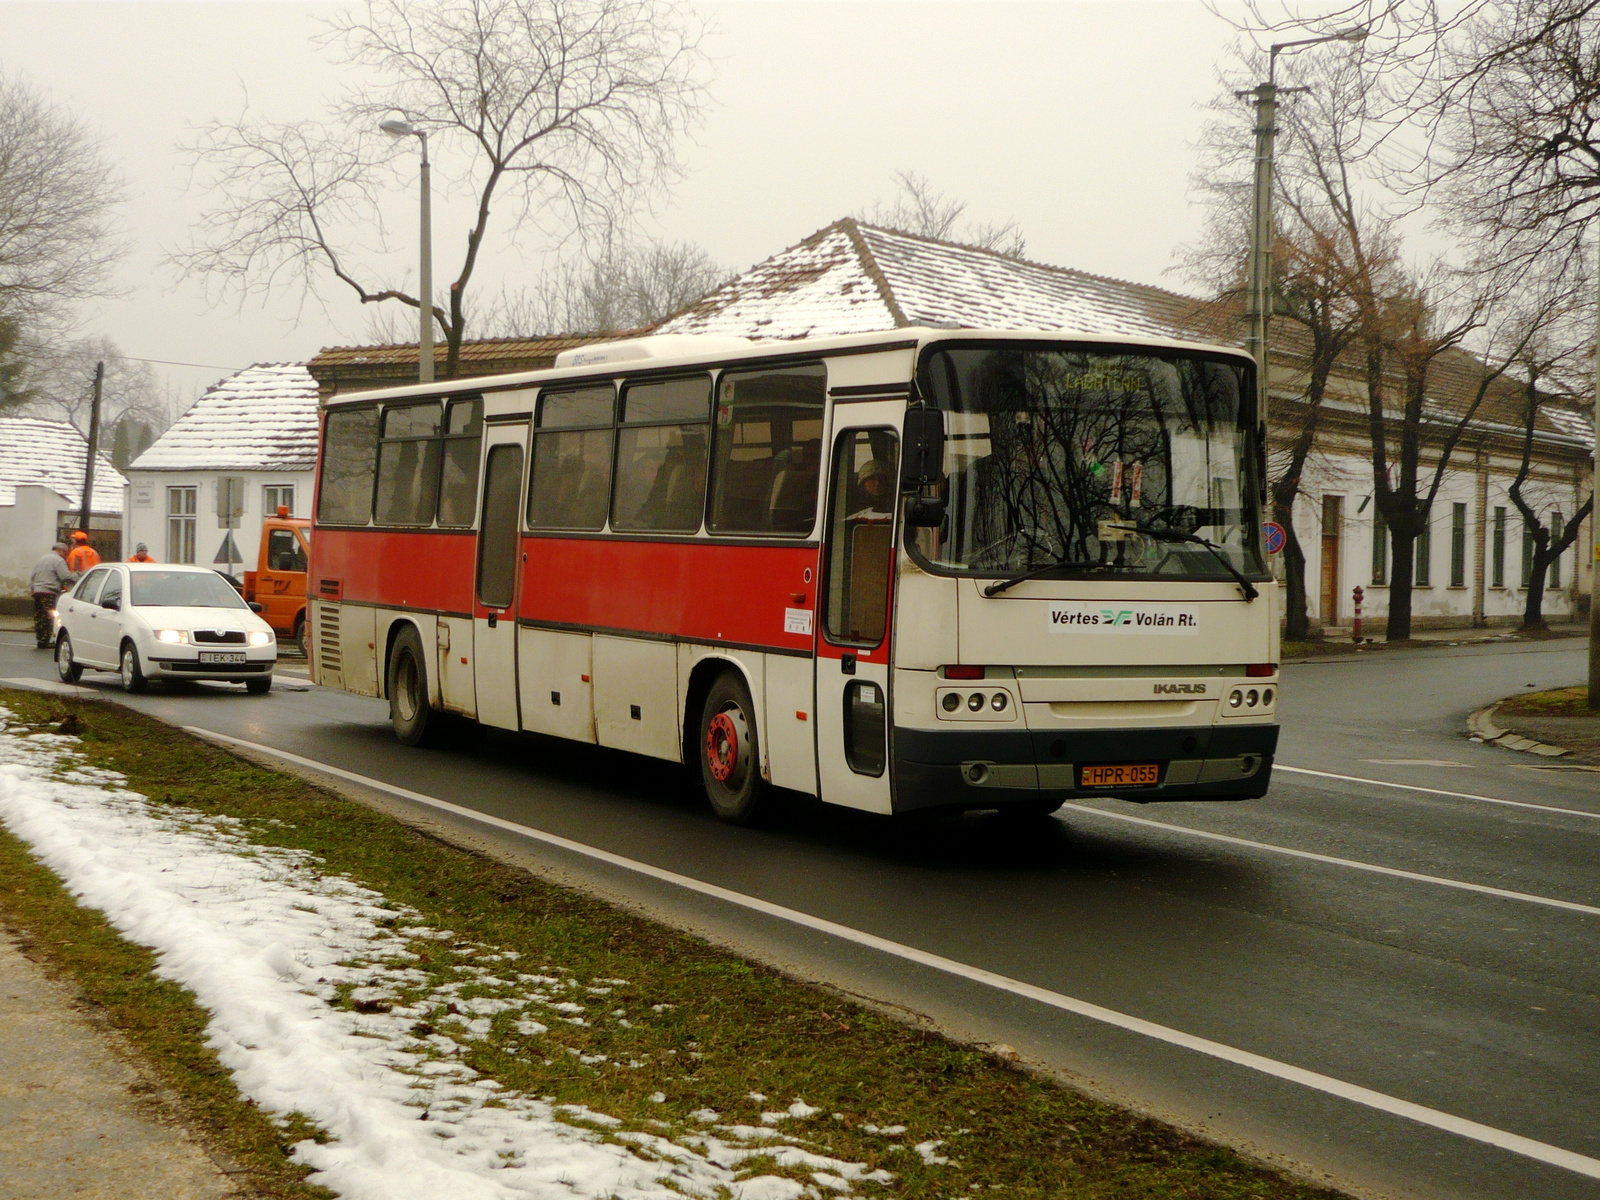 Ikarus C56.22 (HPR-055)